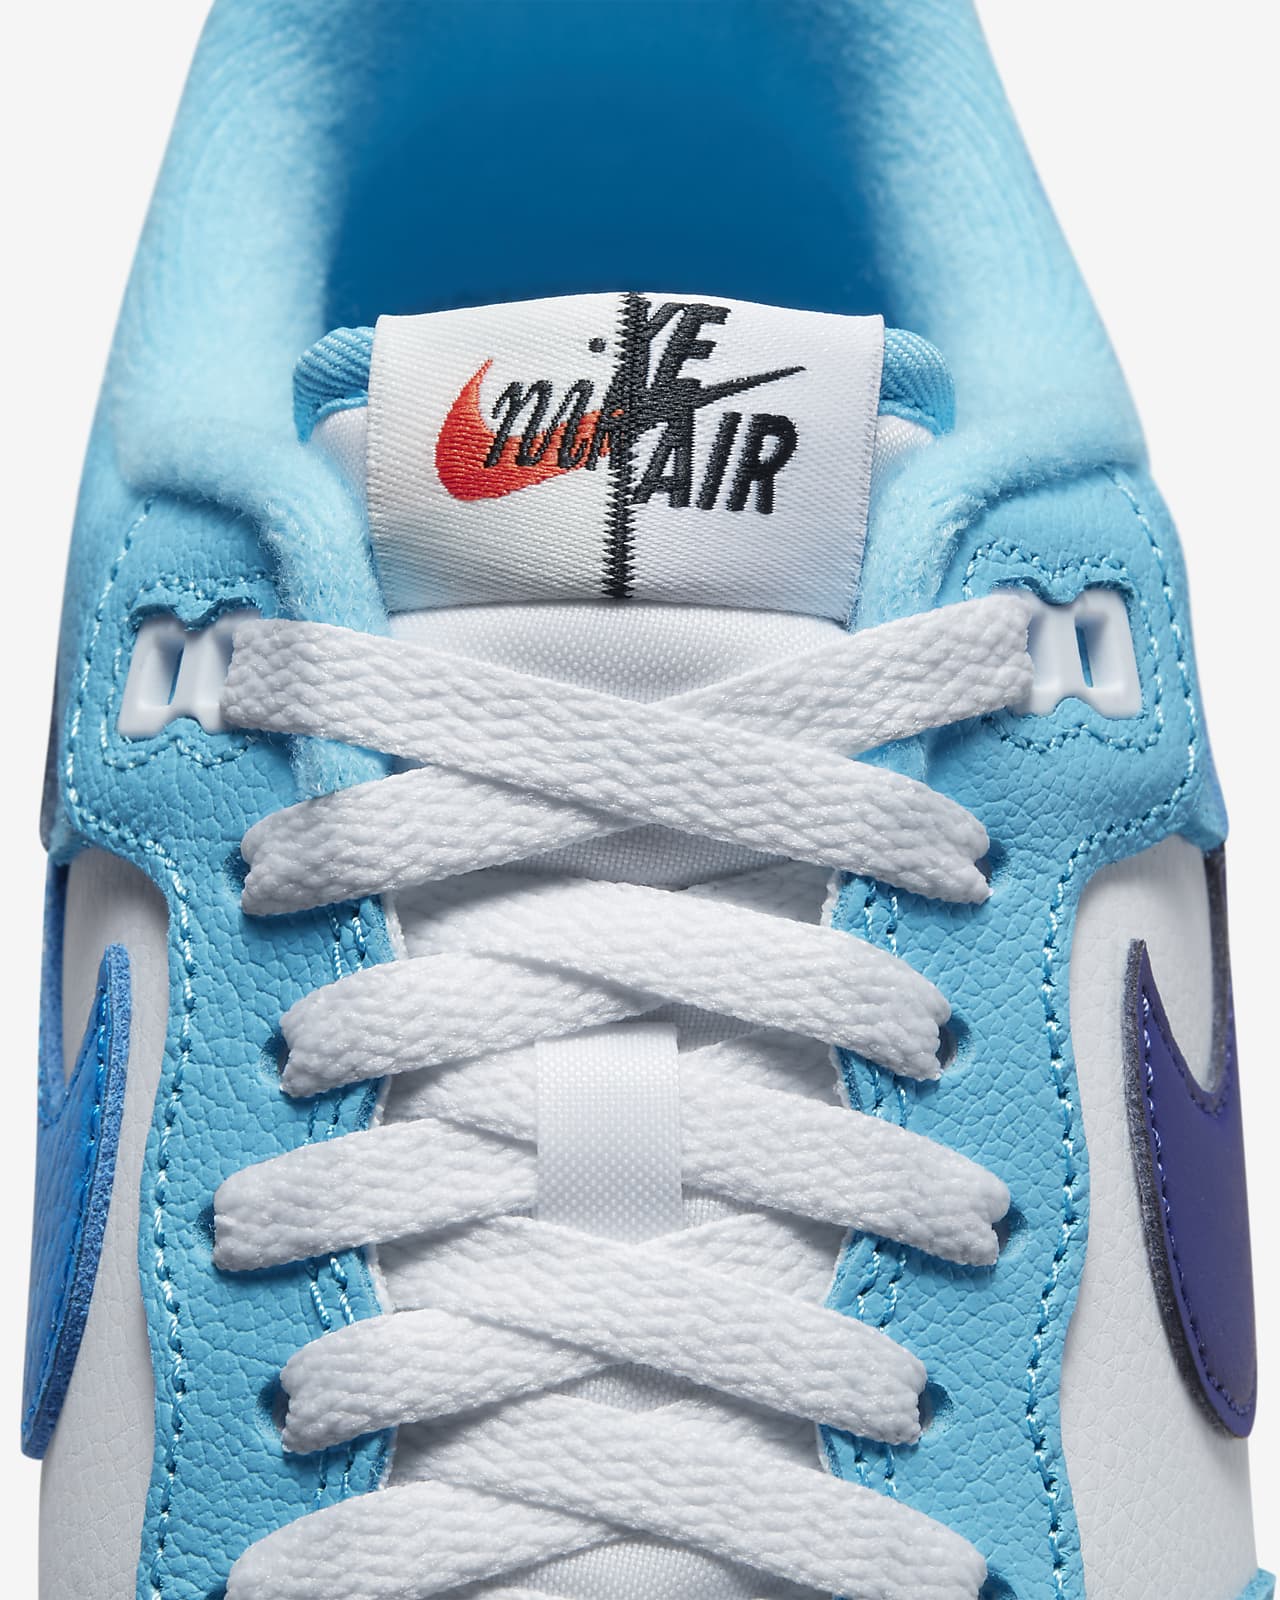 Nike Air Max 1 Deep Royal Blue White / 10